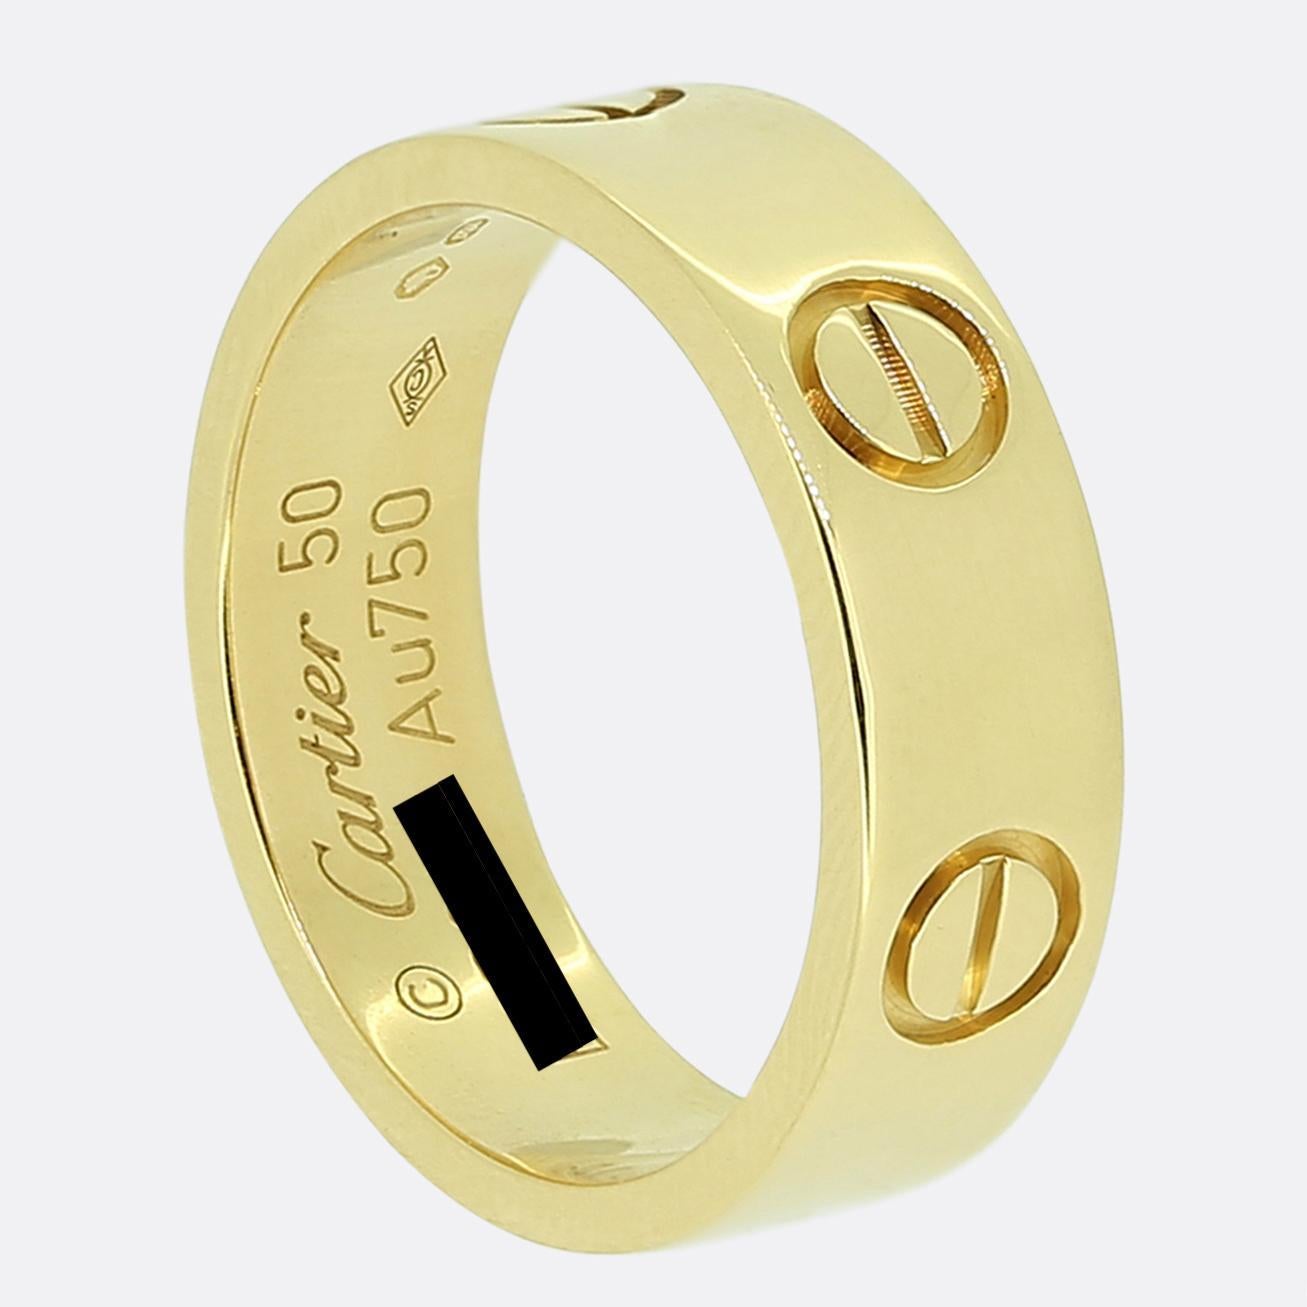 Hier haben wir einen Ring aus 18 Karat Gelbgold aus dem weltbekannten Luxusschmuckhaus Cartier. Dieser Ring ist Teil der kultigen LOVE-Kollektion und gehört zu den berühmtesten Schmuckstücken der Welt. Dies ist das breitere Modell mit einer Breite